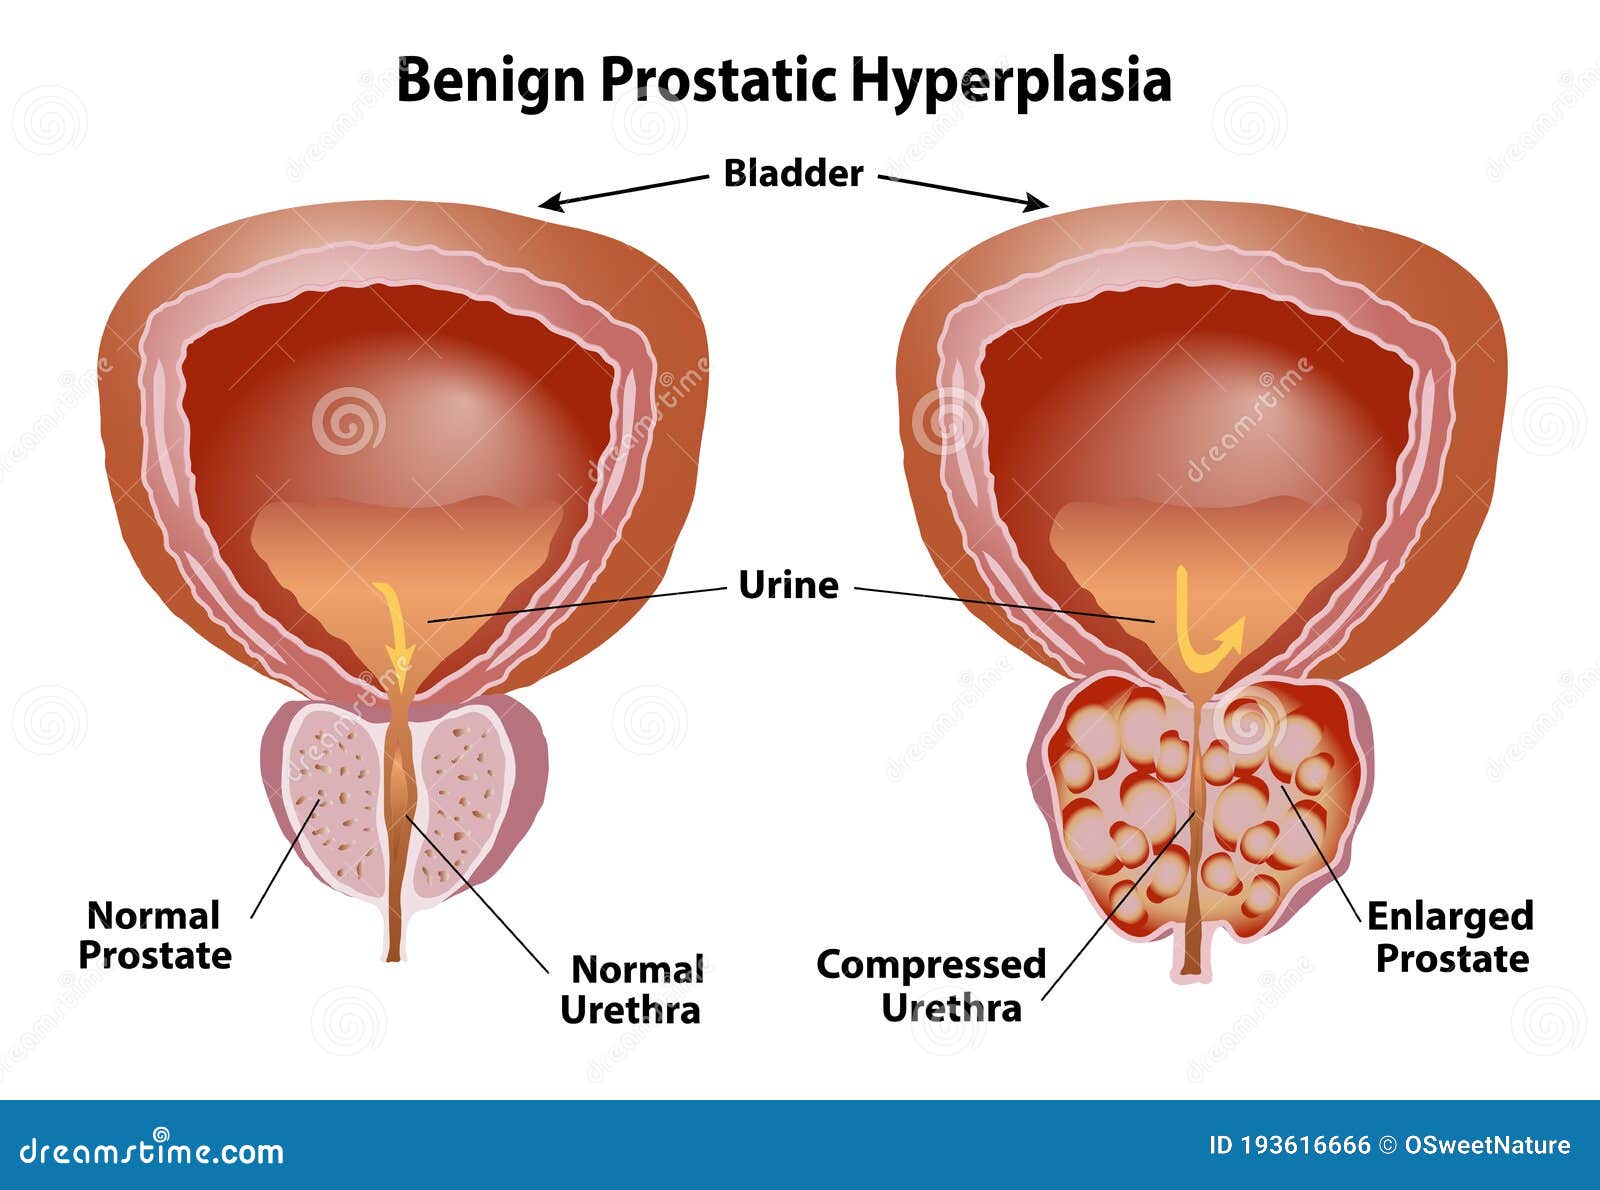 tratamentul prostatitei cu fizioterapie antiinflamatoare naturale pentru prostata